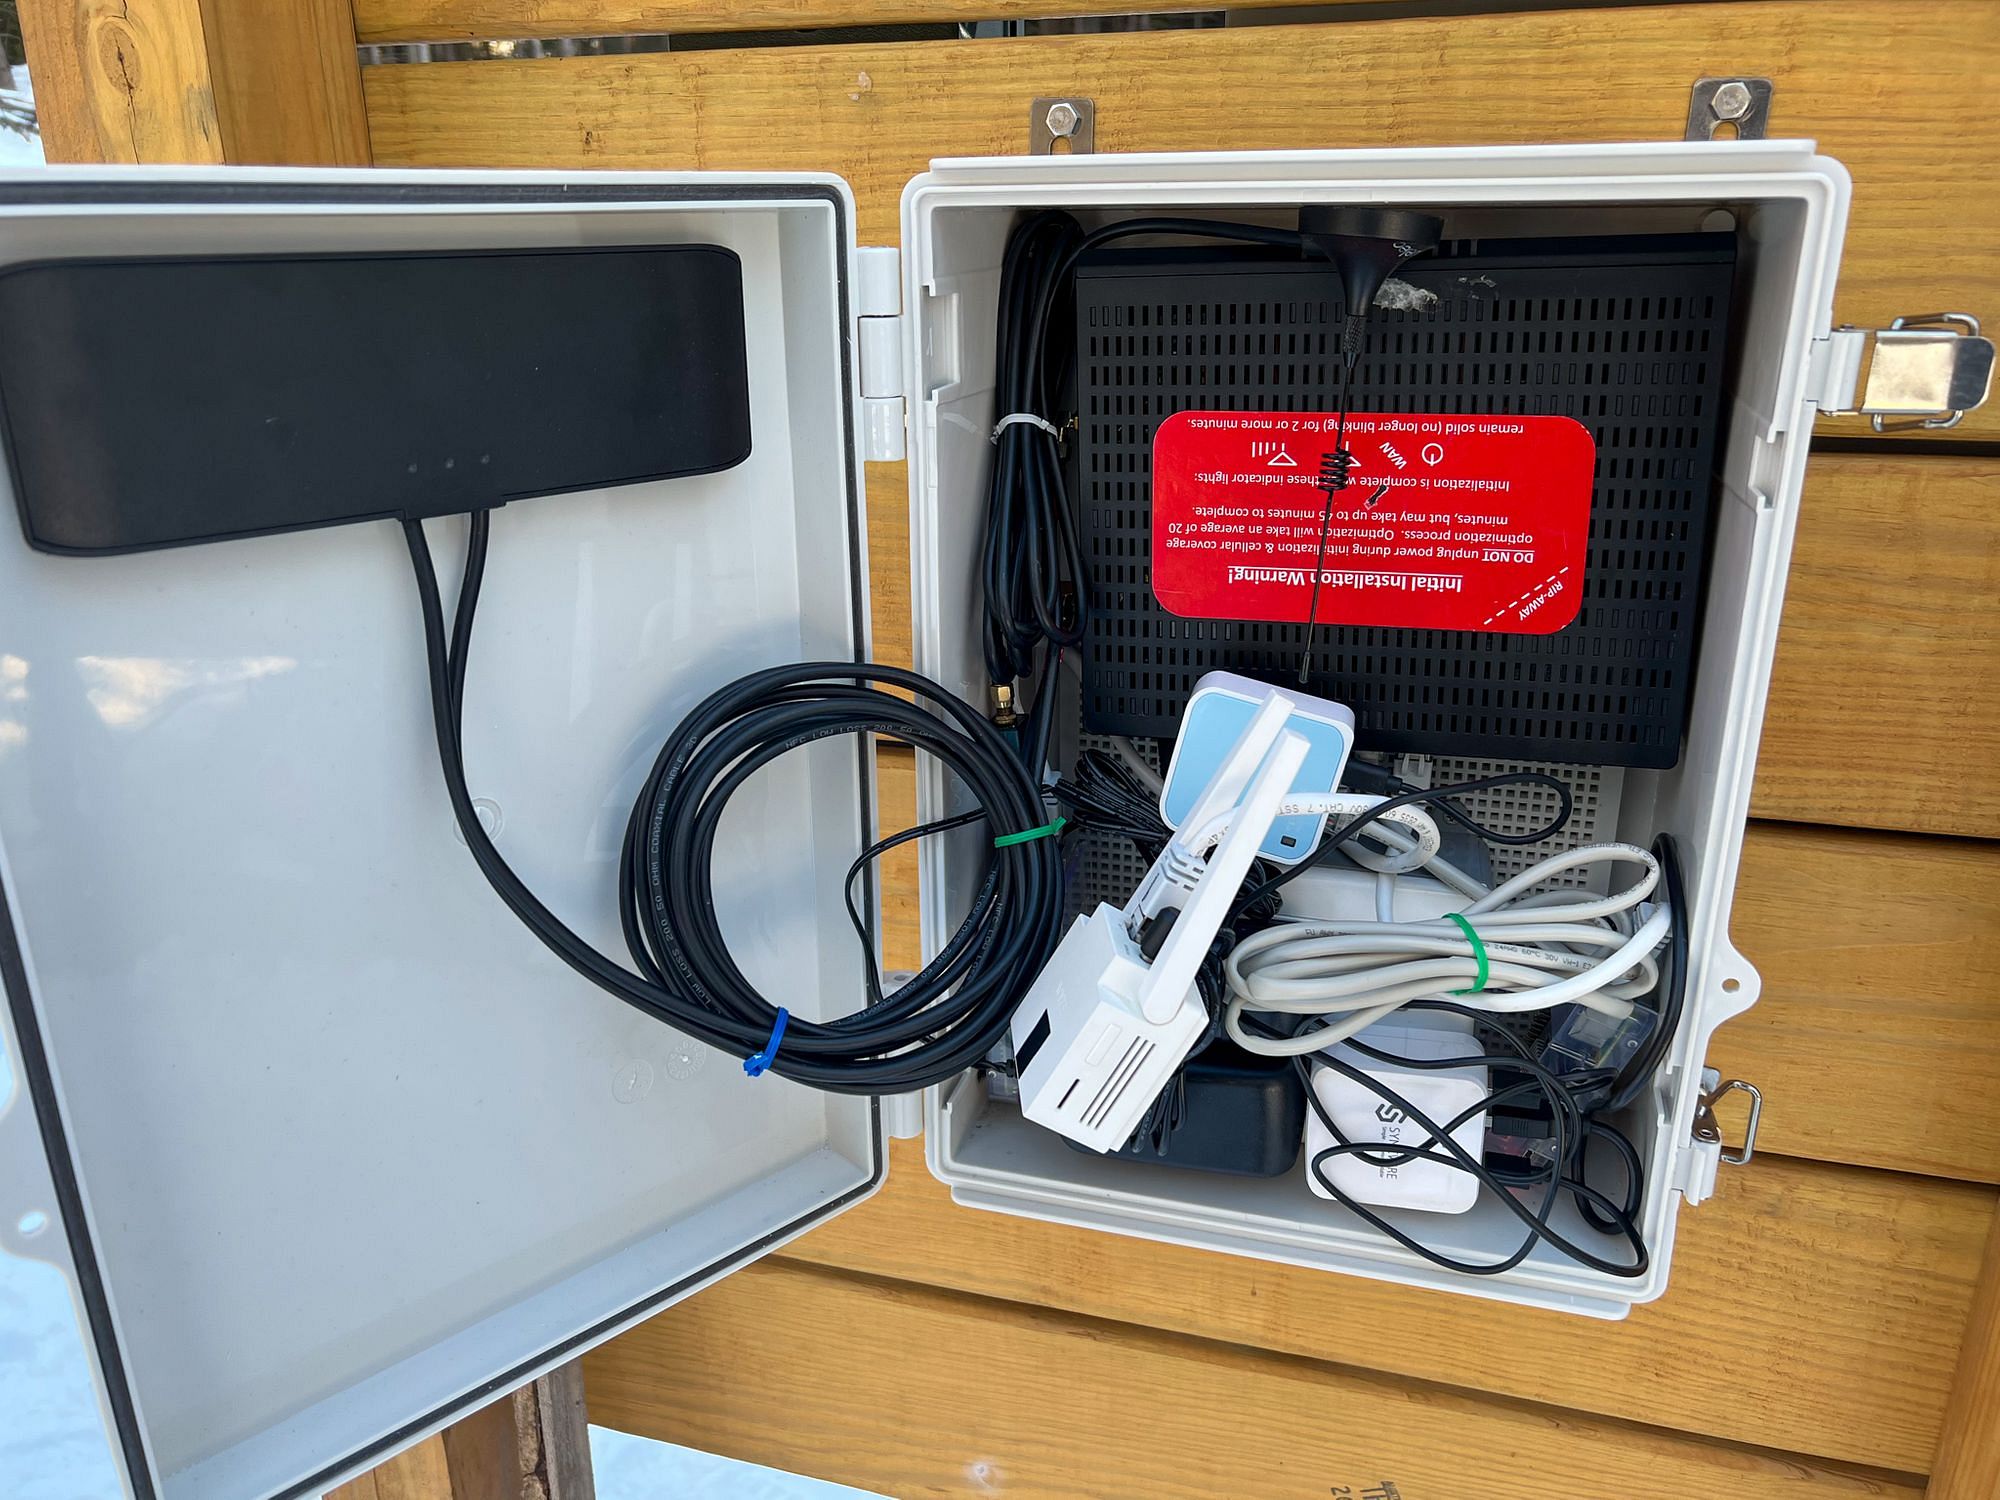 Cellular Modem Wyze Outdoor Cam Raspberry Pi Home Assistant